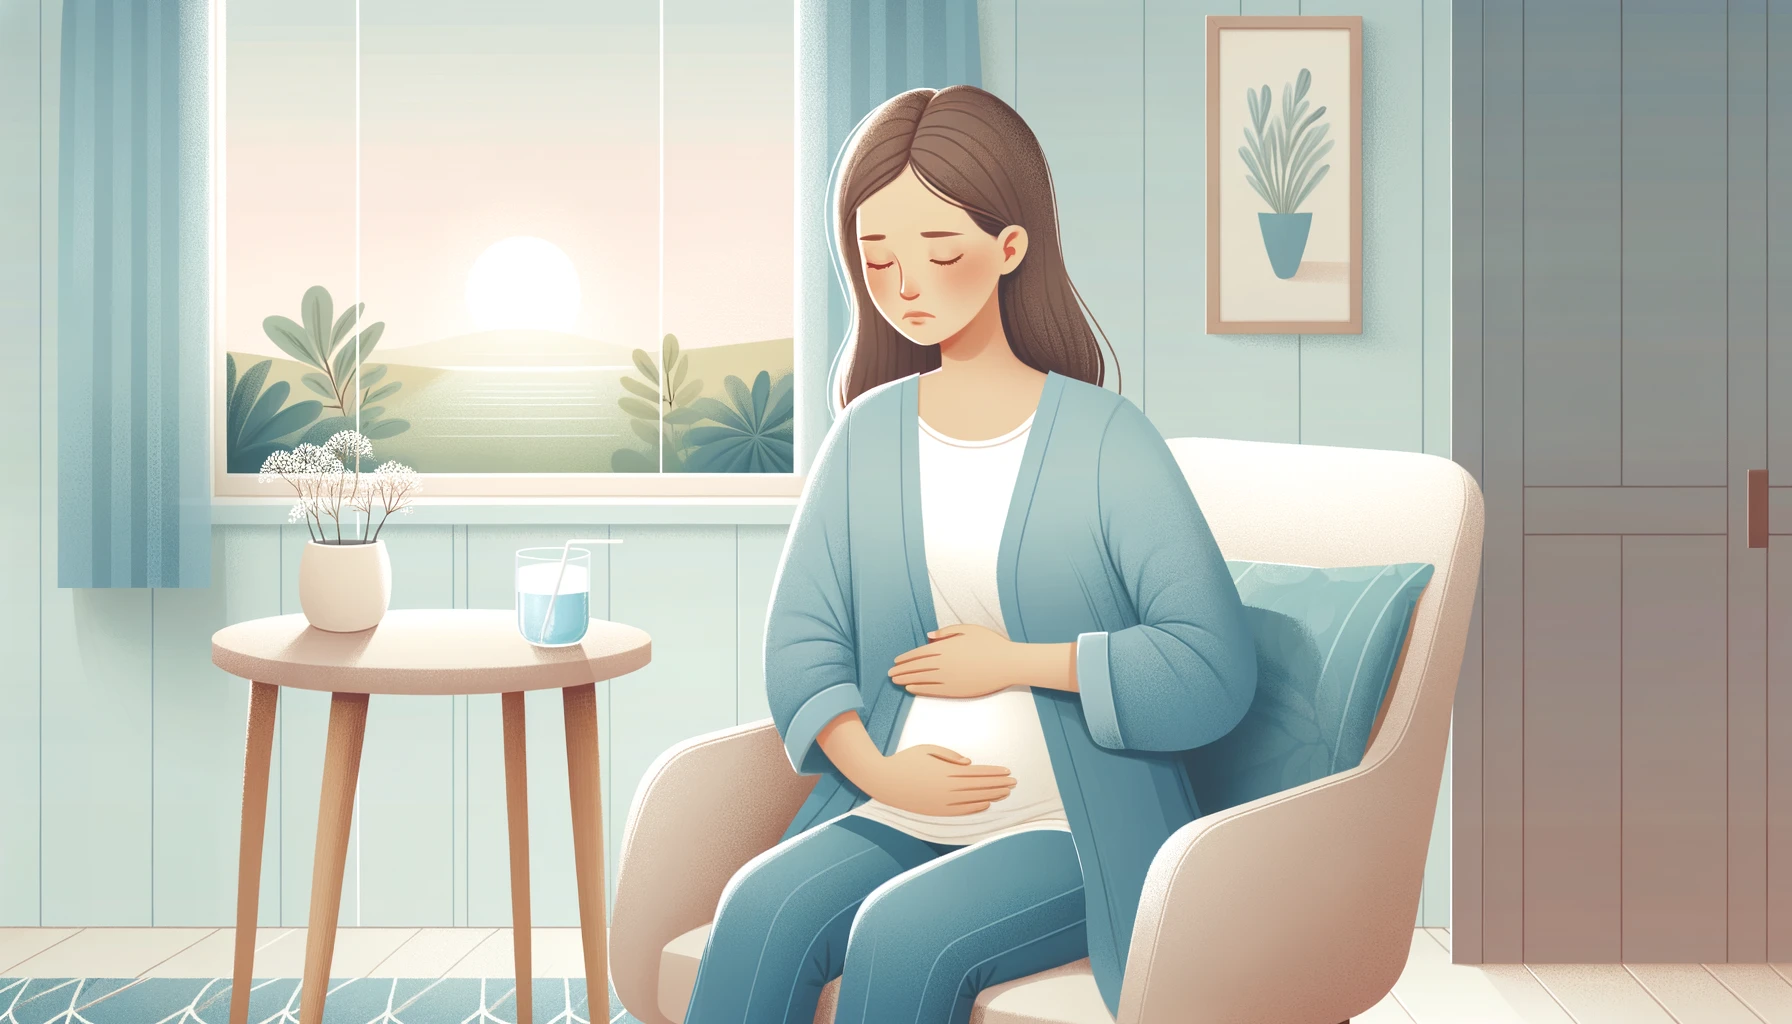 como prevenir las nauseas durante el embarazo